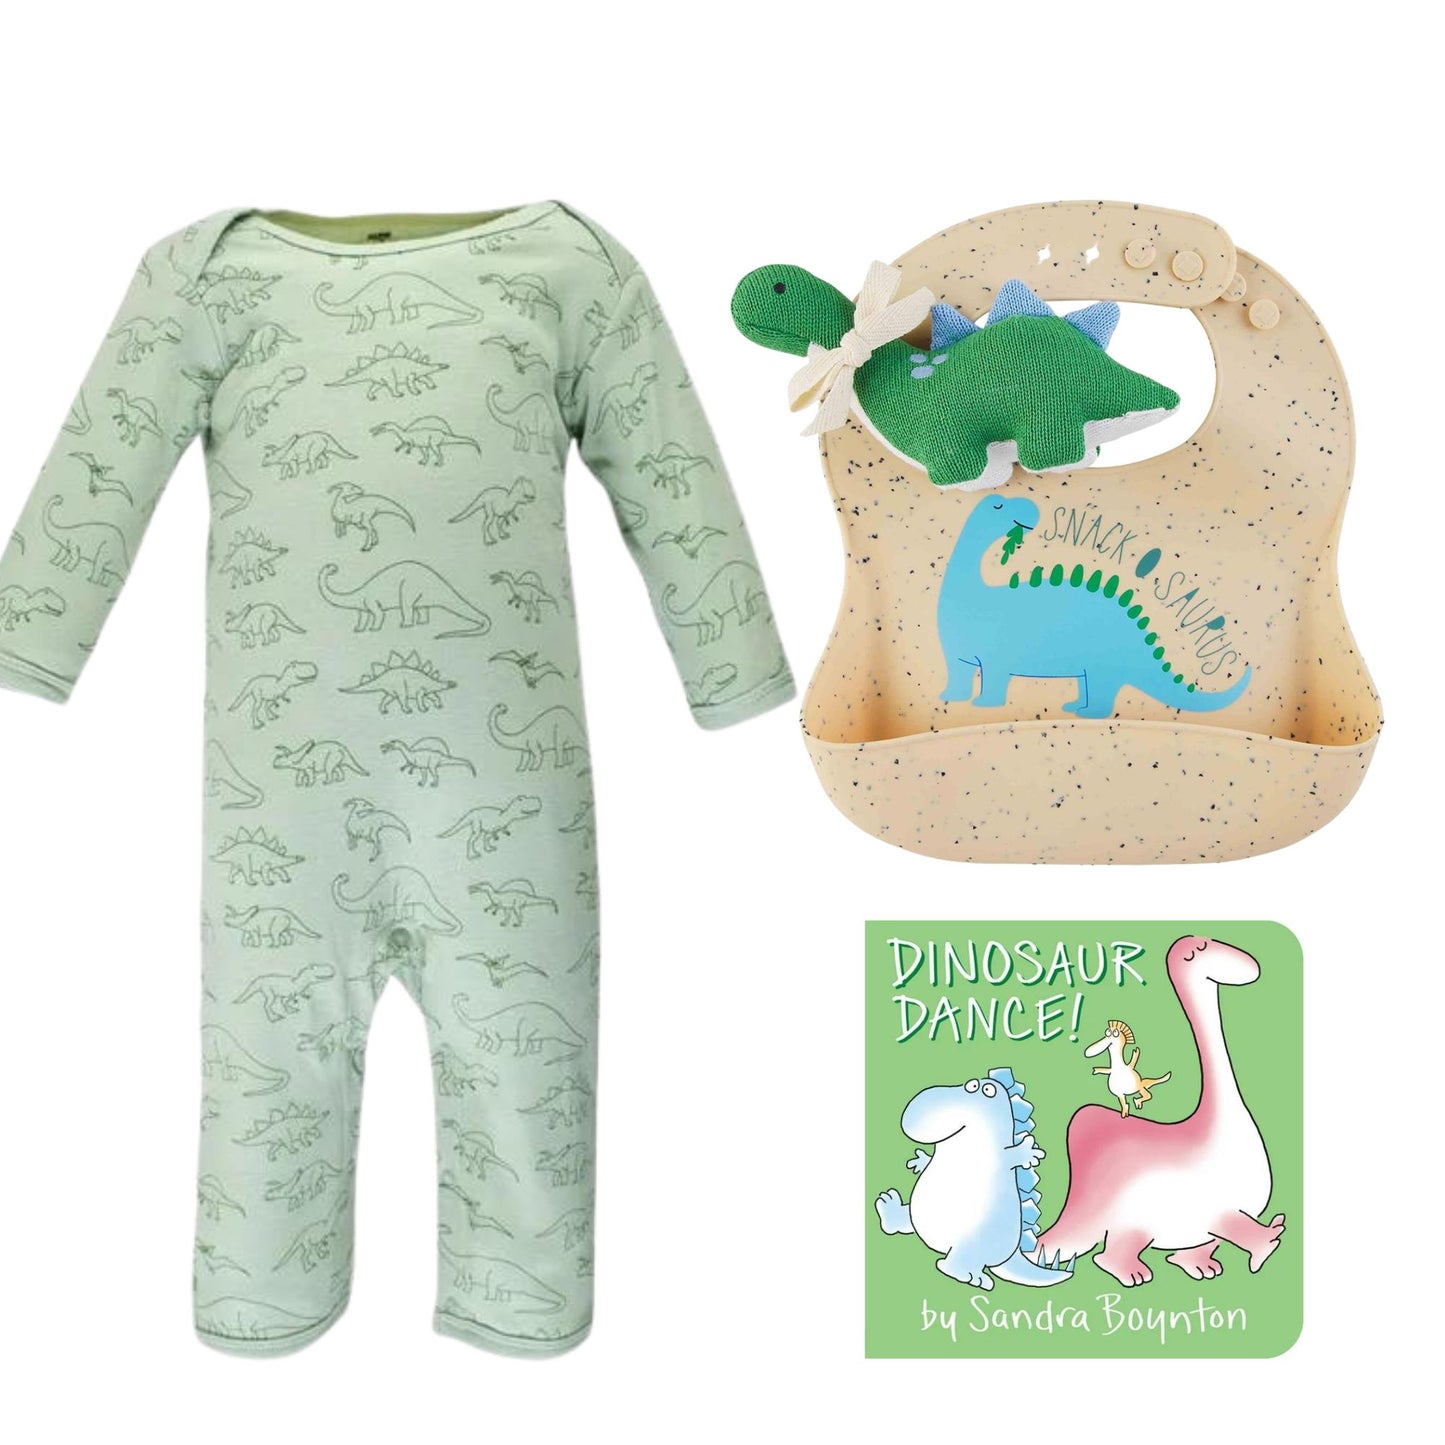 Dinosaur Baby Gift Box